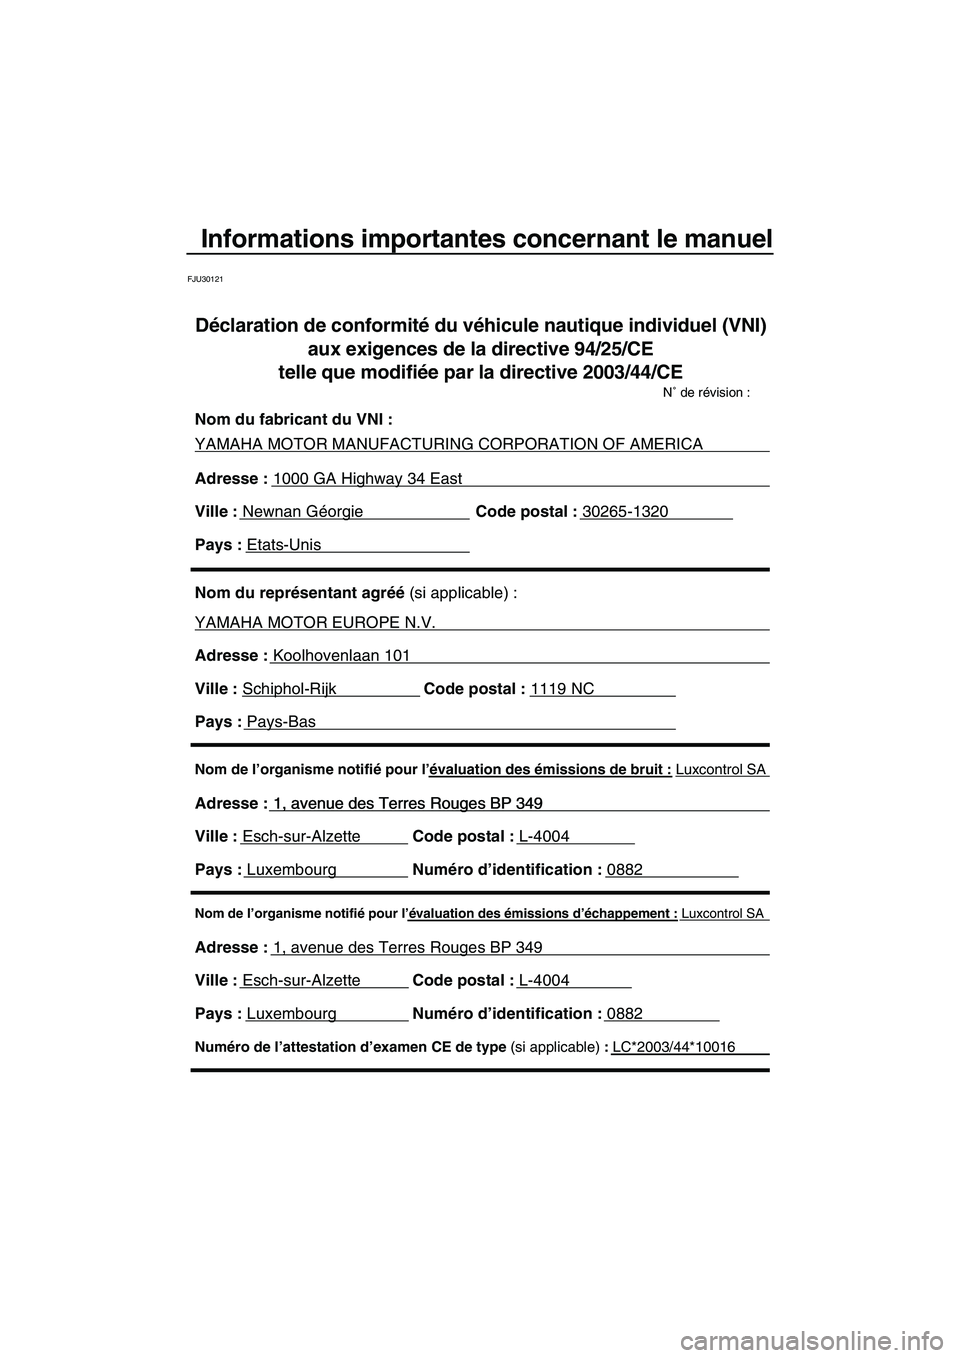 YAMAHA VX CRUISER 2007  Notices Demploi (in French) Informations importantes concernant le manuel
FJU30121
Nom de l’organisme notifié pour l’évaluation des émissions d’échappement : Luxcontrol SA
Adresse : 1, avenue des Terres Rouges BP 349 
